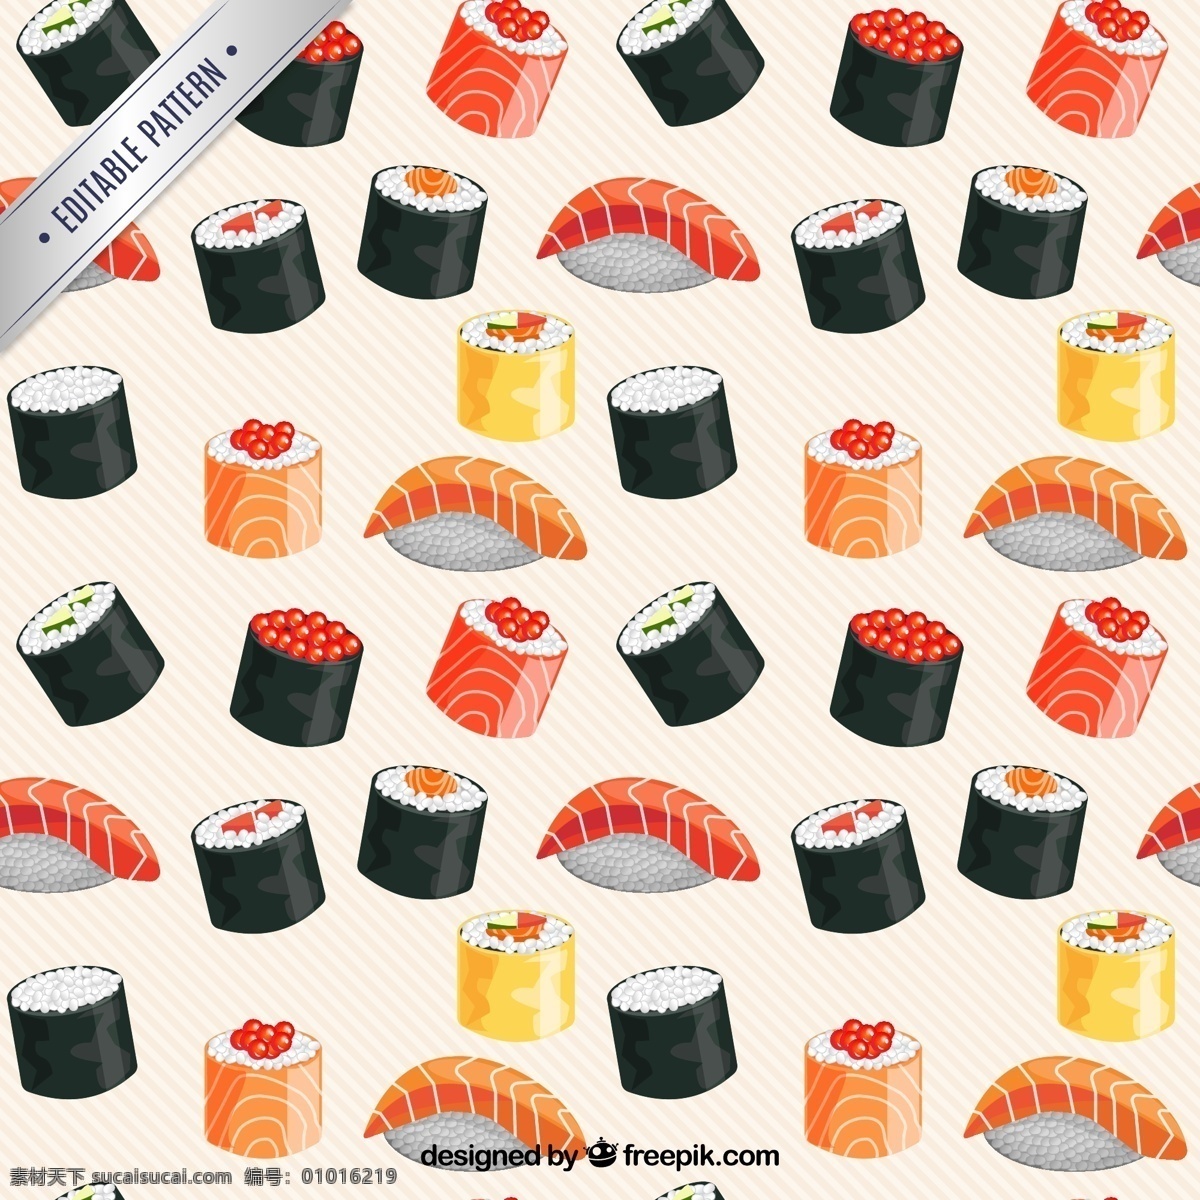 美味 日本 寿司 无缝 背景 矢量图 刺身寿司 日本料理 食物 无缝背景 矢量背景 矢量素材